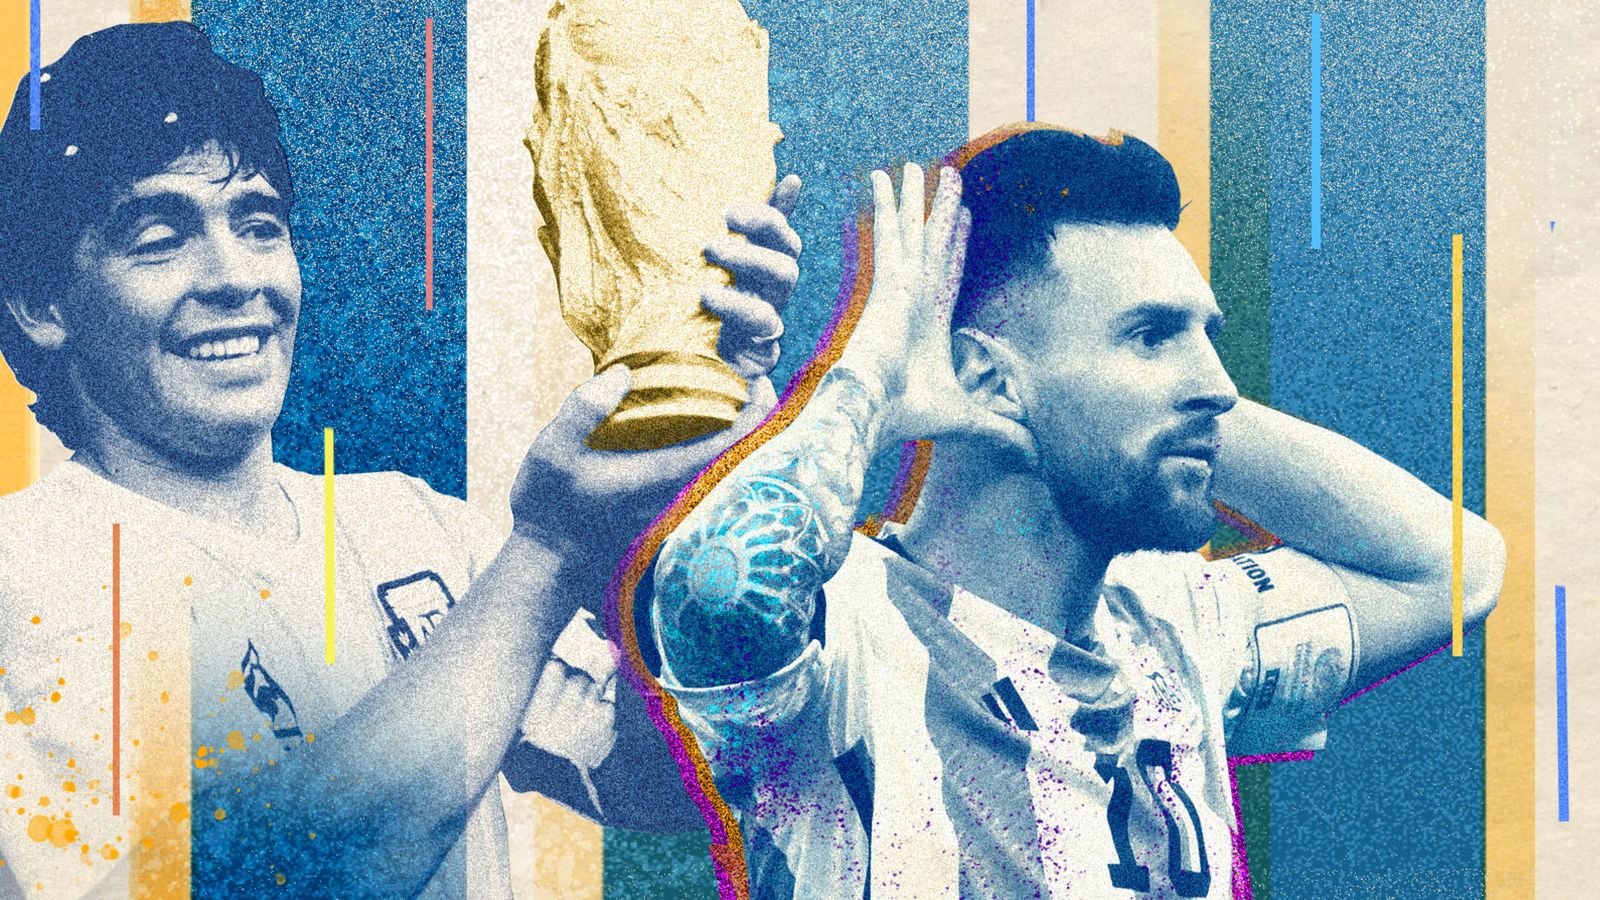 Lionel Messi & Argentina: Xem hình ảnh của Lionel Messi cùng đội tuyển Argentina để chiêm ngưỡng sự kết hợp hoàn hảo giữa cầu thủ và đội tuyển. Những khoảnh khắc đáng nhớ của Messi khi cùng Argentina giành được những danh hiệu lớn sẽ giúp bạn tưởng niệm và ngưỡng mộ tài năng phi thường của anh.